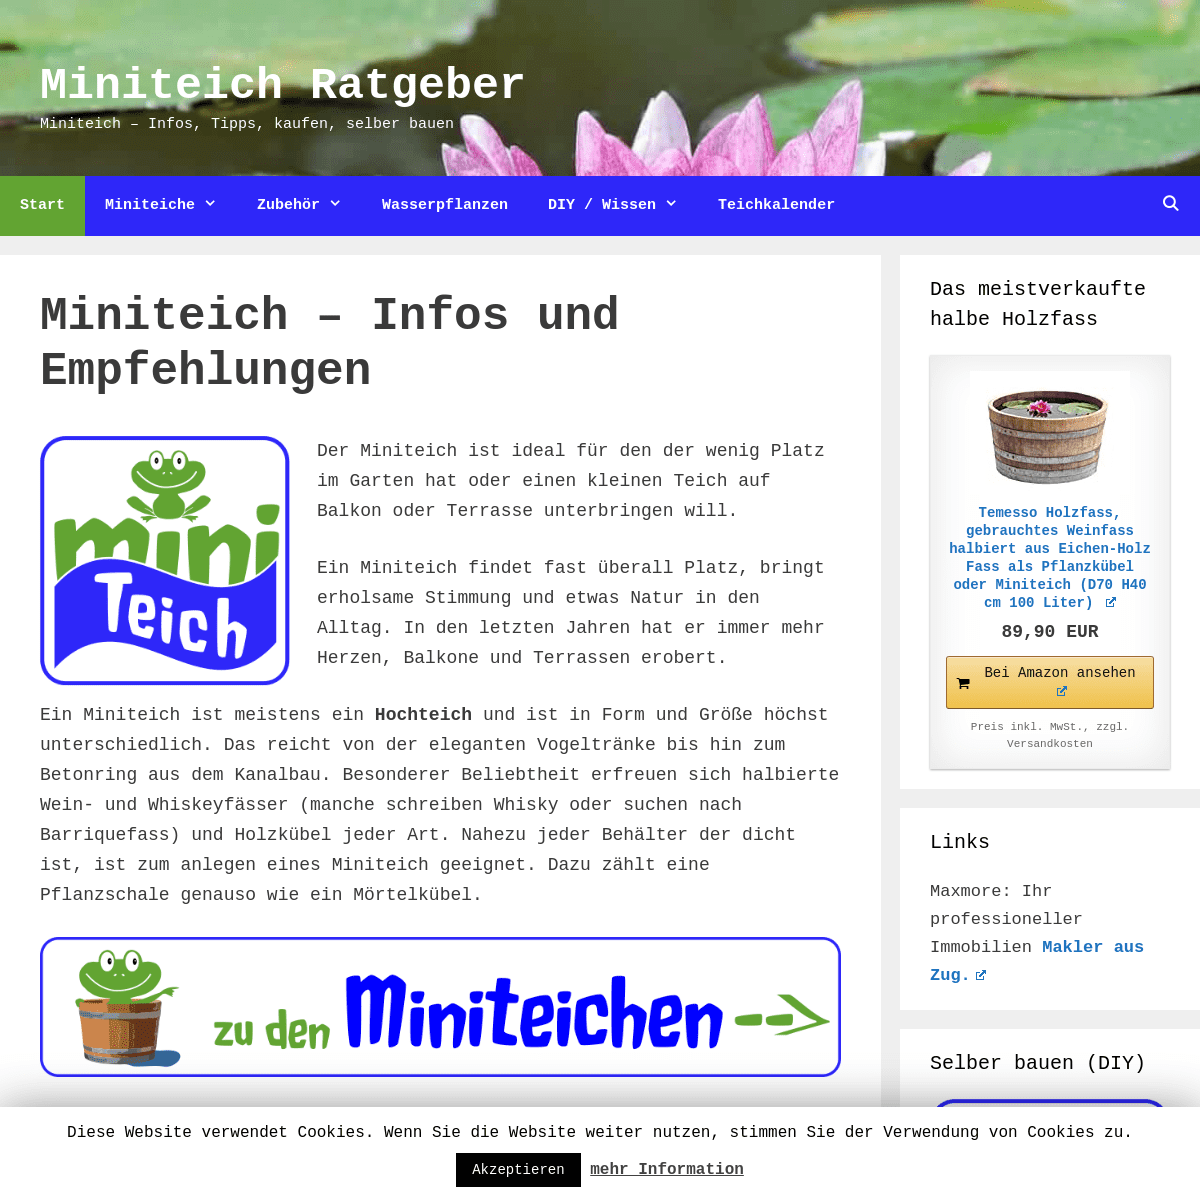 A complete backup of miniteich-ratgeber.de